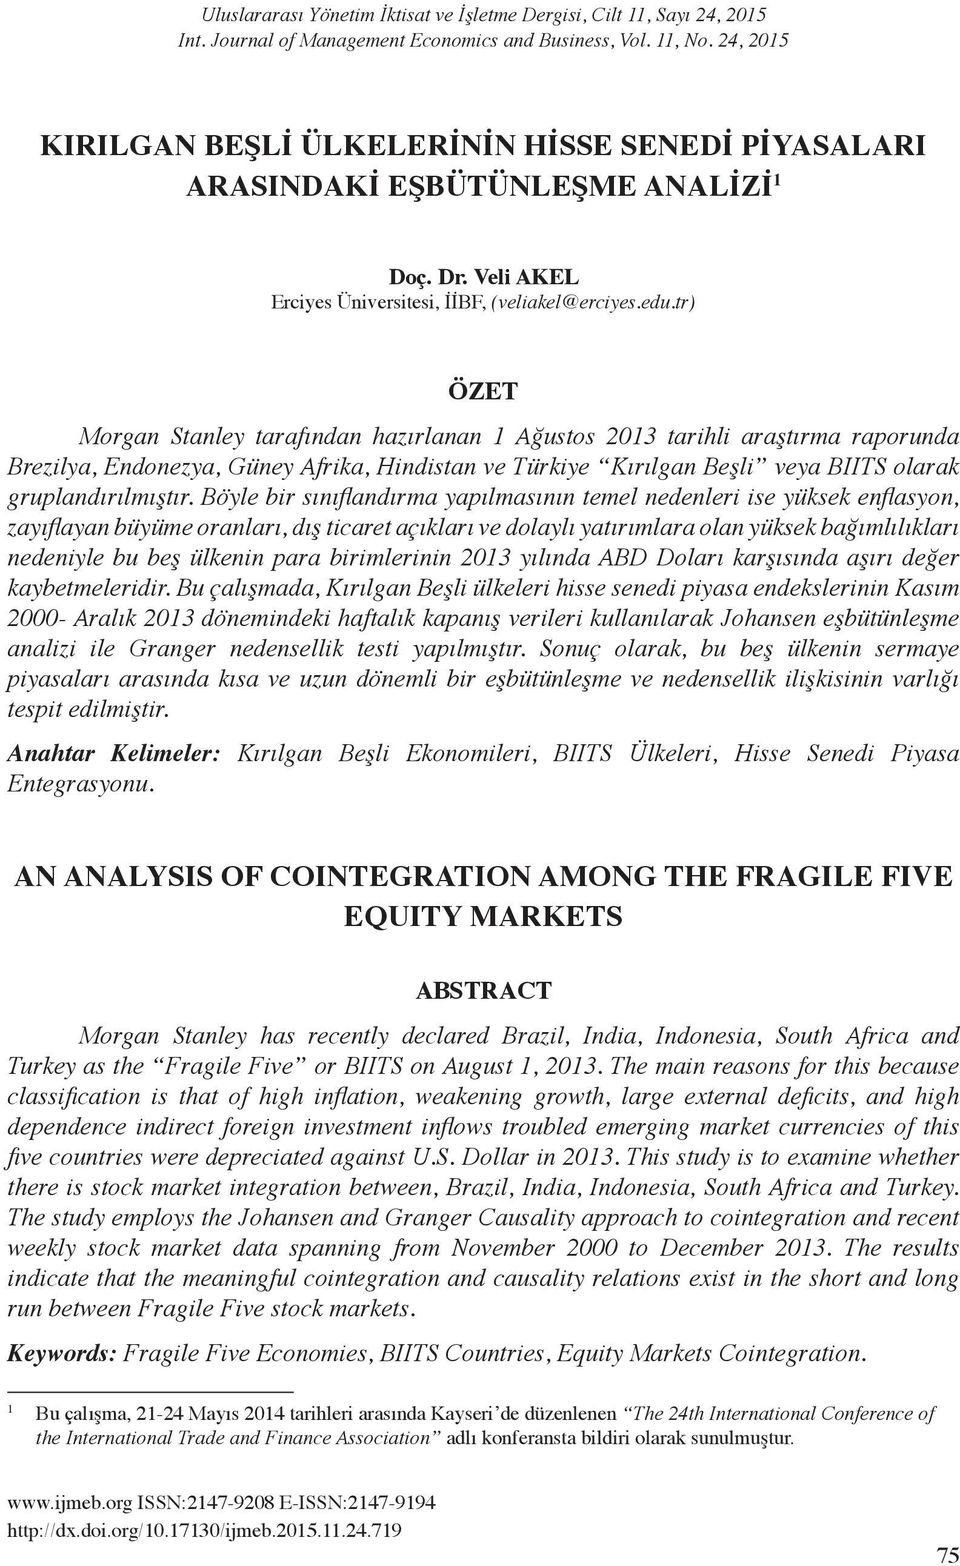 tr) ÖZET Morga Staley tarafıda hazırlaa 1 Ağustos 2013 tarihli araştırma raporuda Brezilya, Edoezya, Güey Afrika, Hidista ve Türkiye Kırılga Beşli veya BIITS olarak grupladırılmıştır.